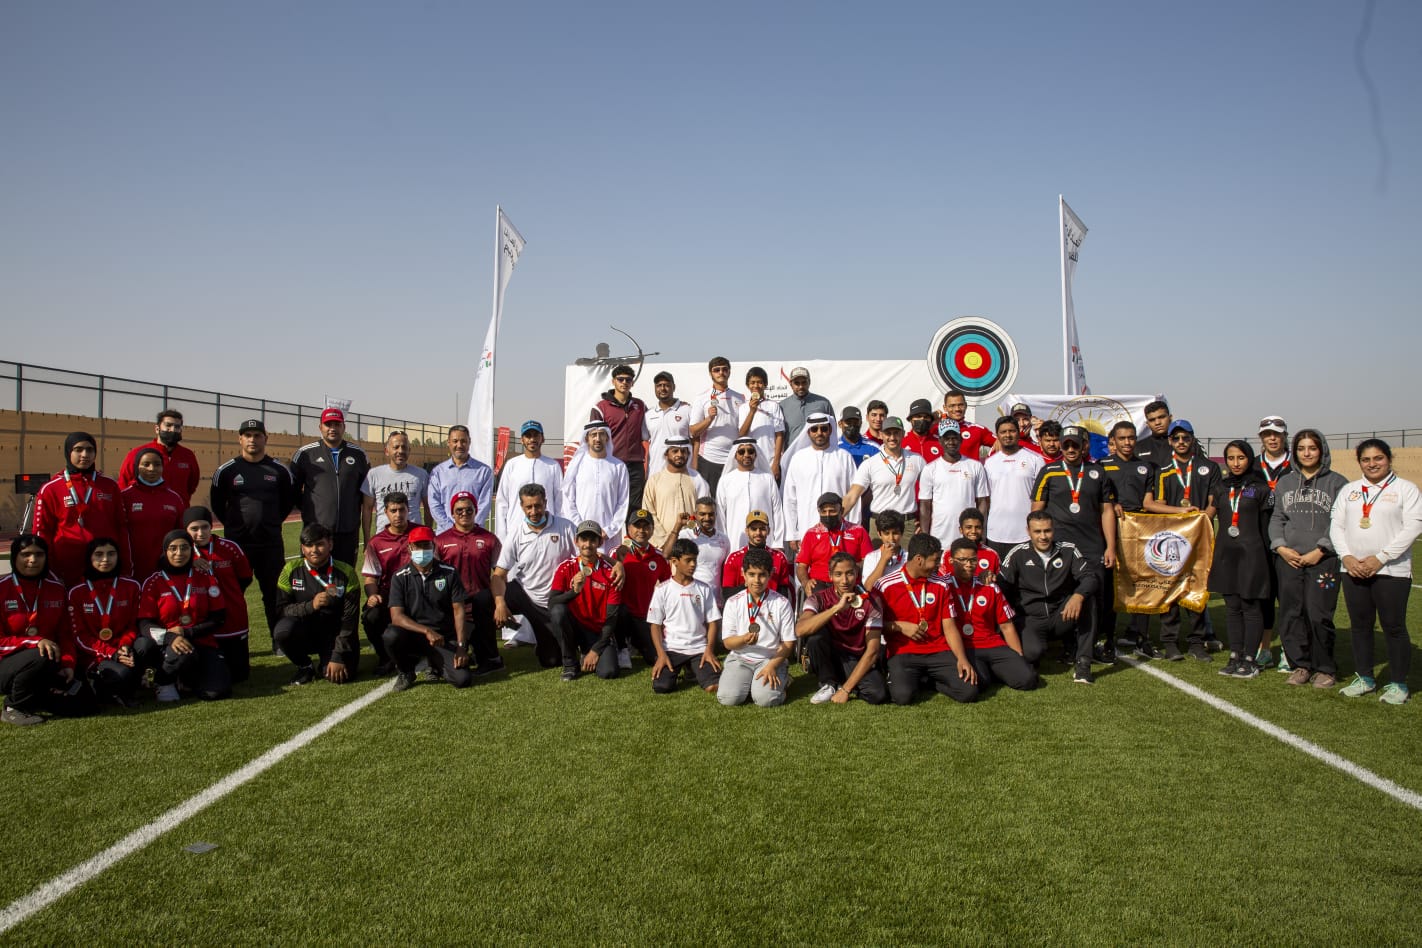 منافسة قوية ومواهب بارزة في الجولة الرابعة لكأس الإمارات للقوس والسهم